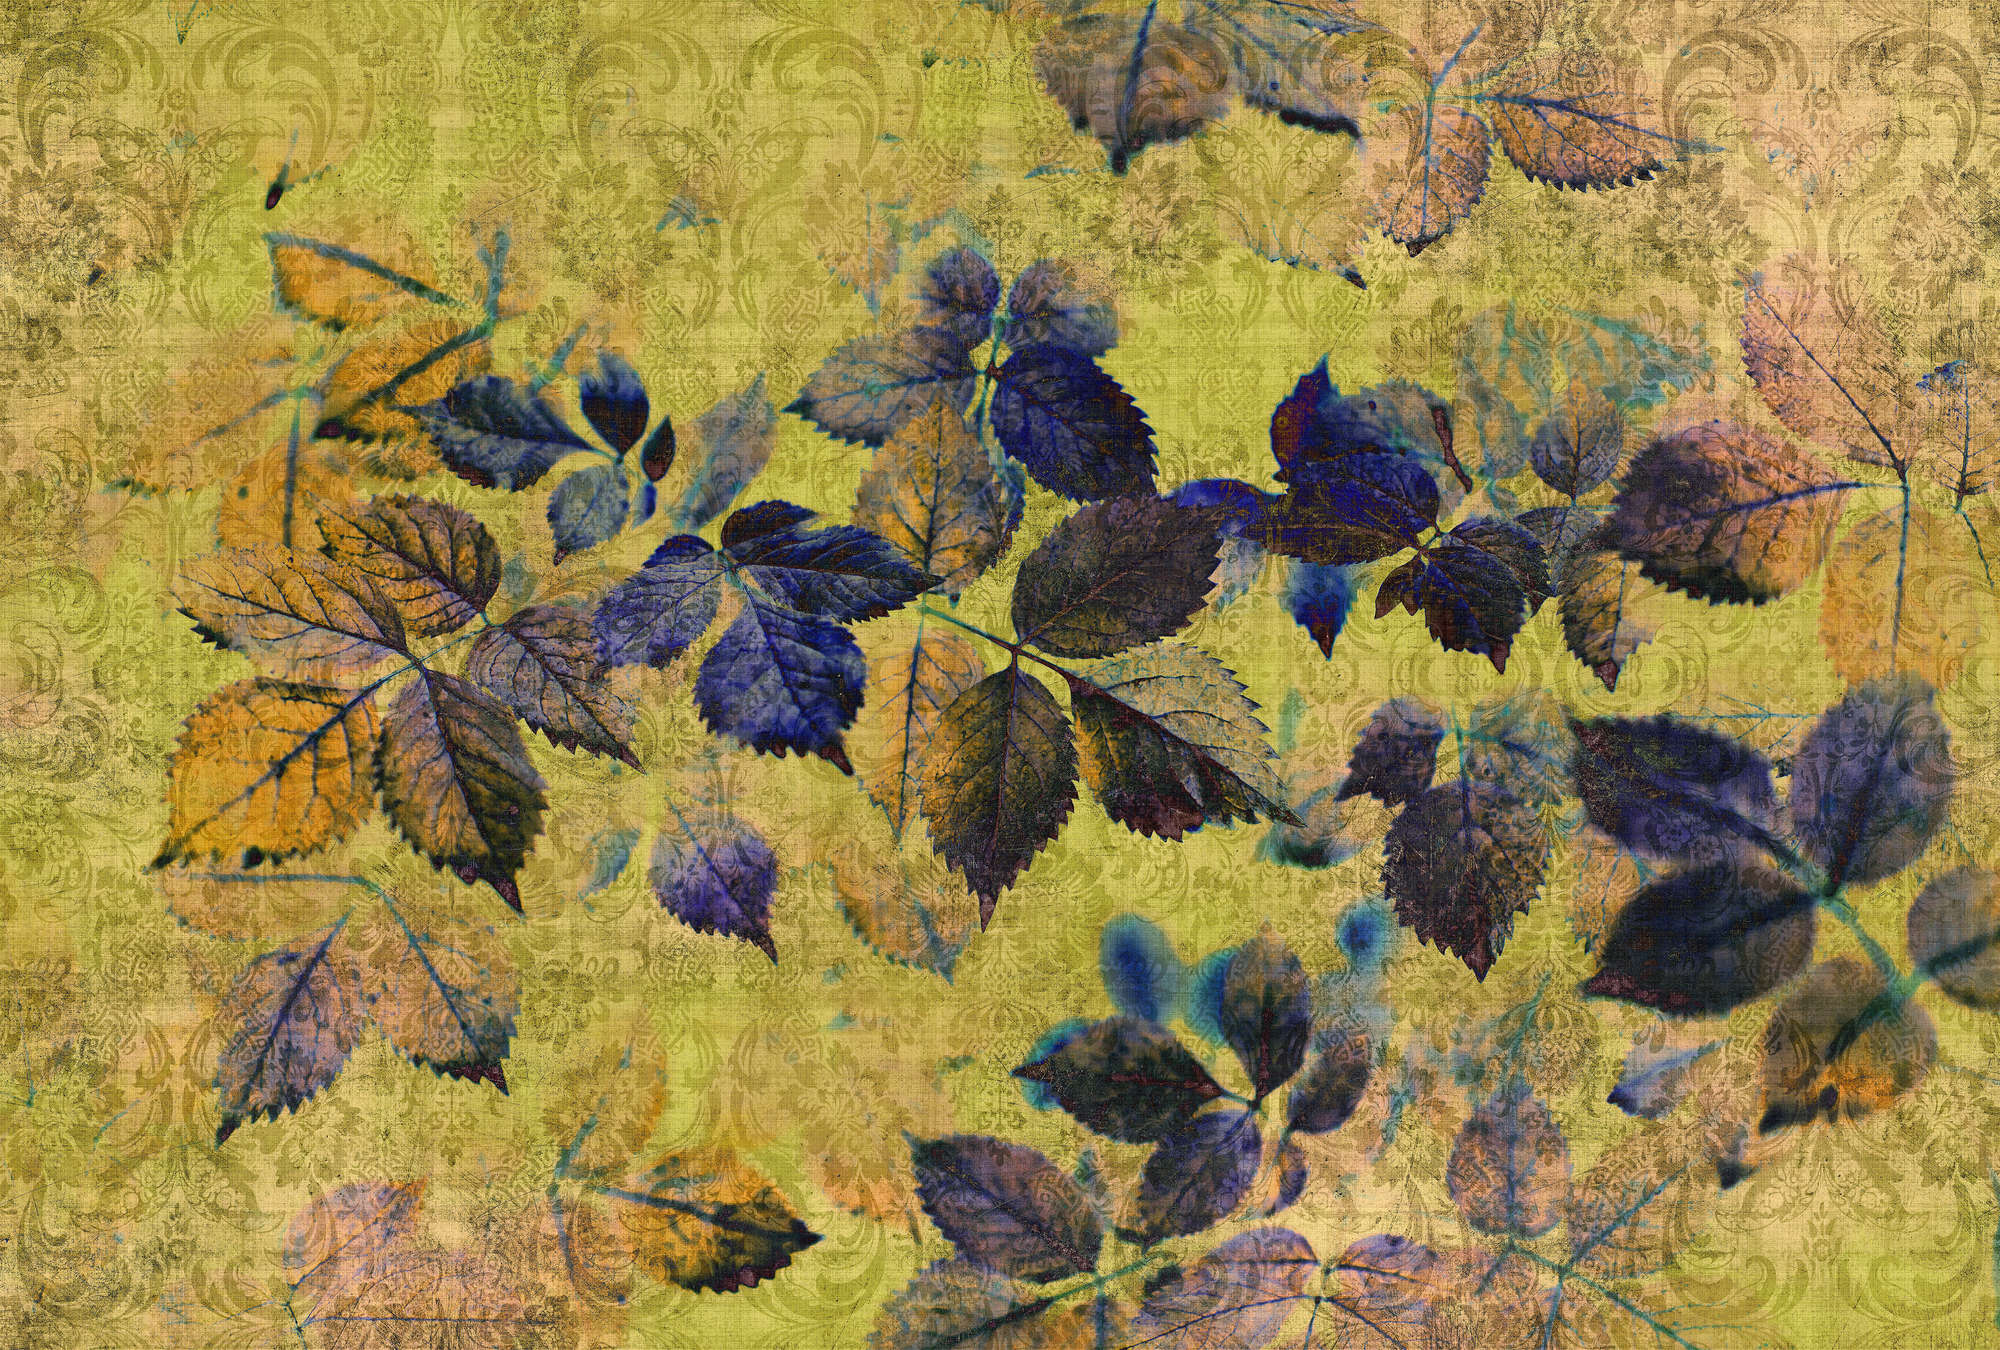             Verano indio 1 - Fotomural con hojas y ornamentos en estructura de lino natural - Amarillo, Naranja | Liso mate
        